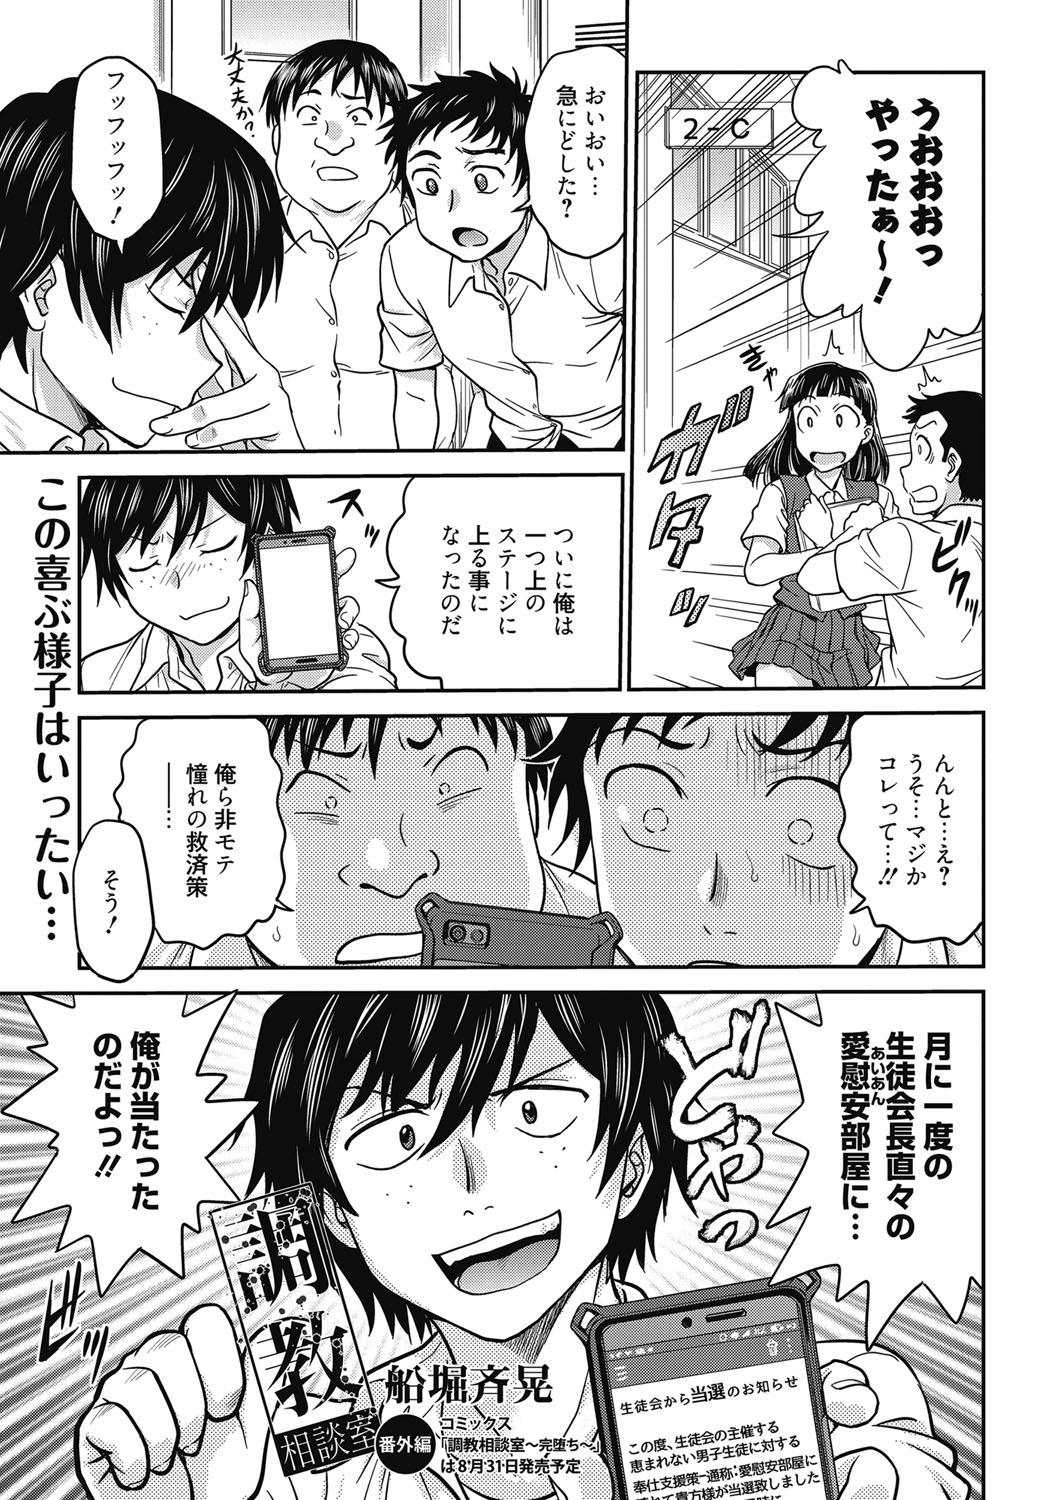 Taiwan Web Manga Bangaichi Vol. 24 Nice - Page 4